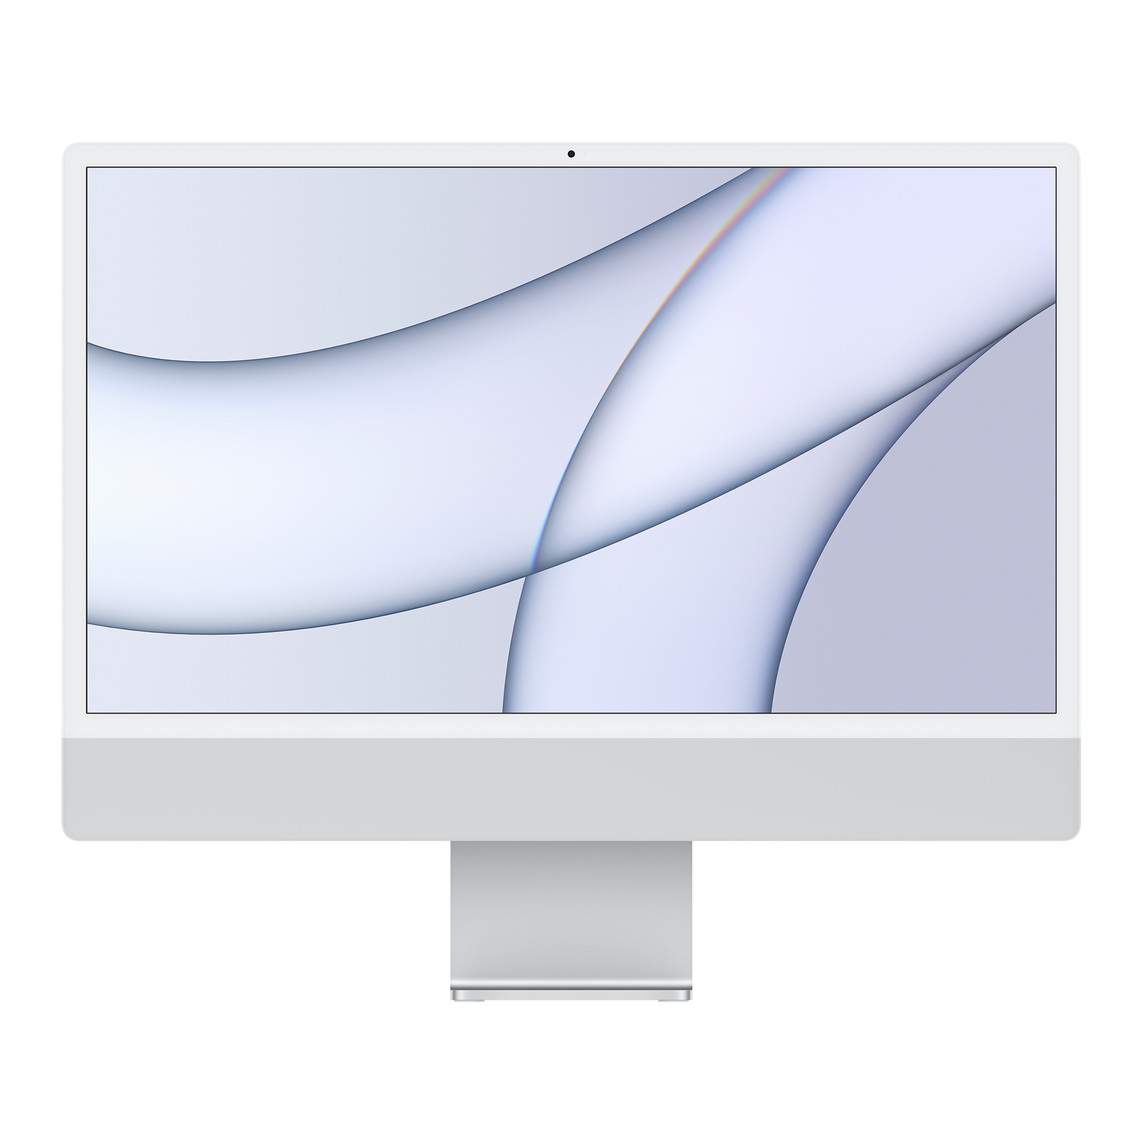 iMac, Gehäusevorderseite, weißer Display-Rand, silbernes Gehäuse und Standfuß aus Aluminium